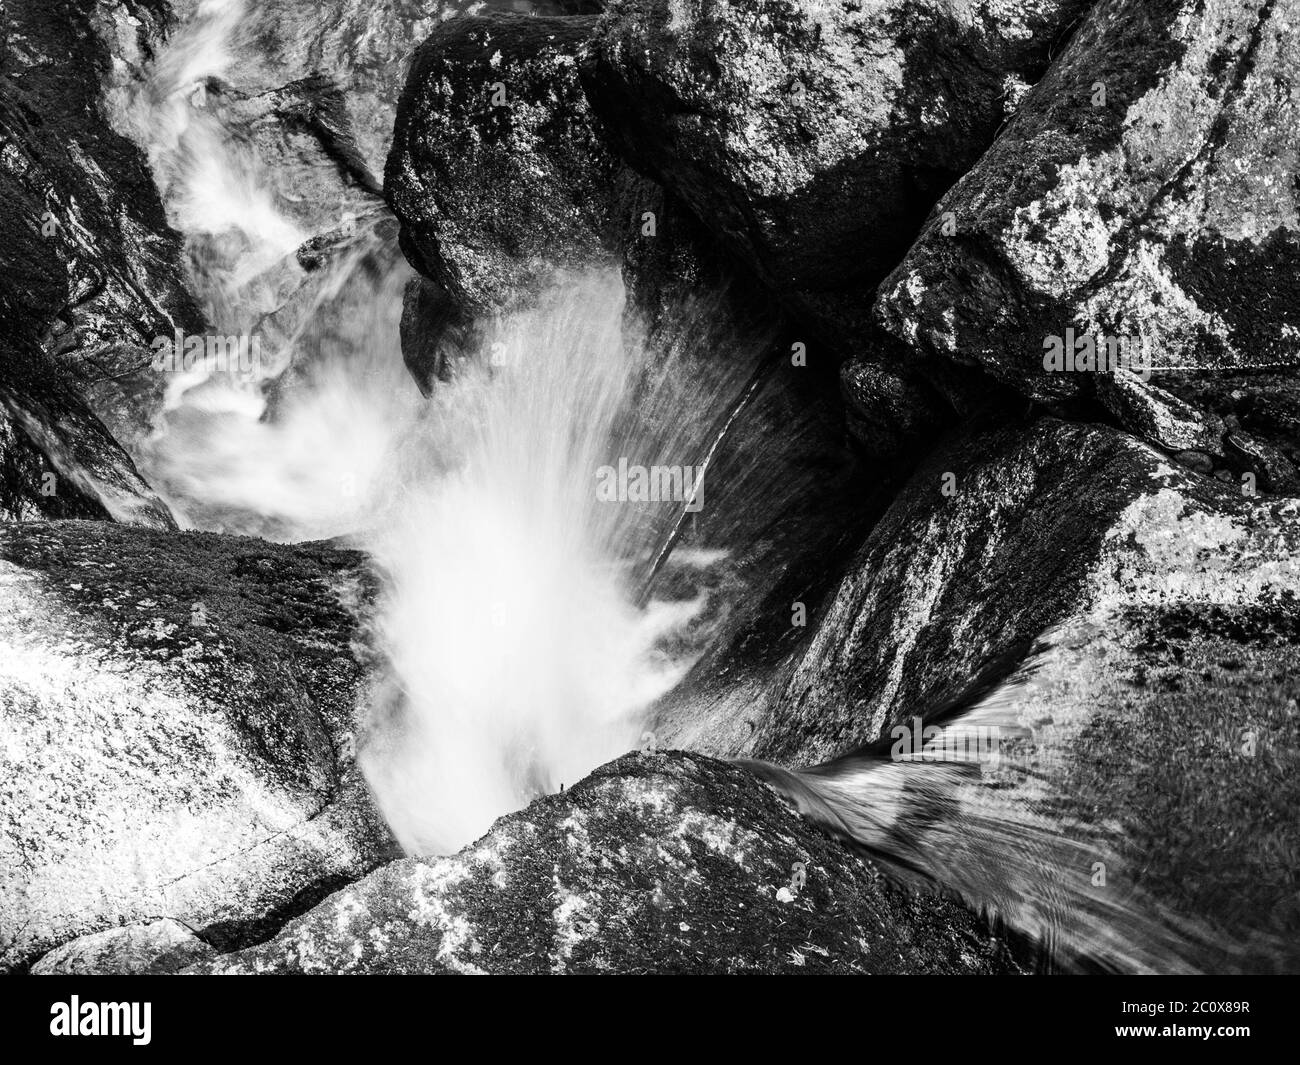 Wasserfallkaskade des kleinen Baches zwischen moosigen Steinen. Langzeitbelichtung Schwarzweiß-Bild. Stockfoto